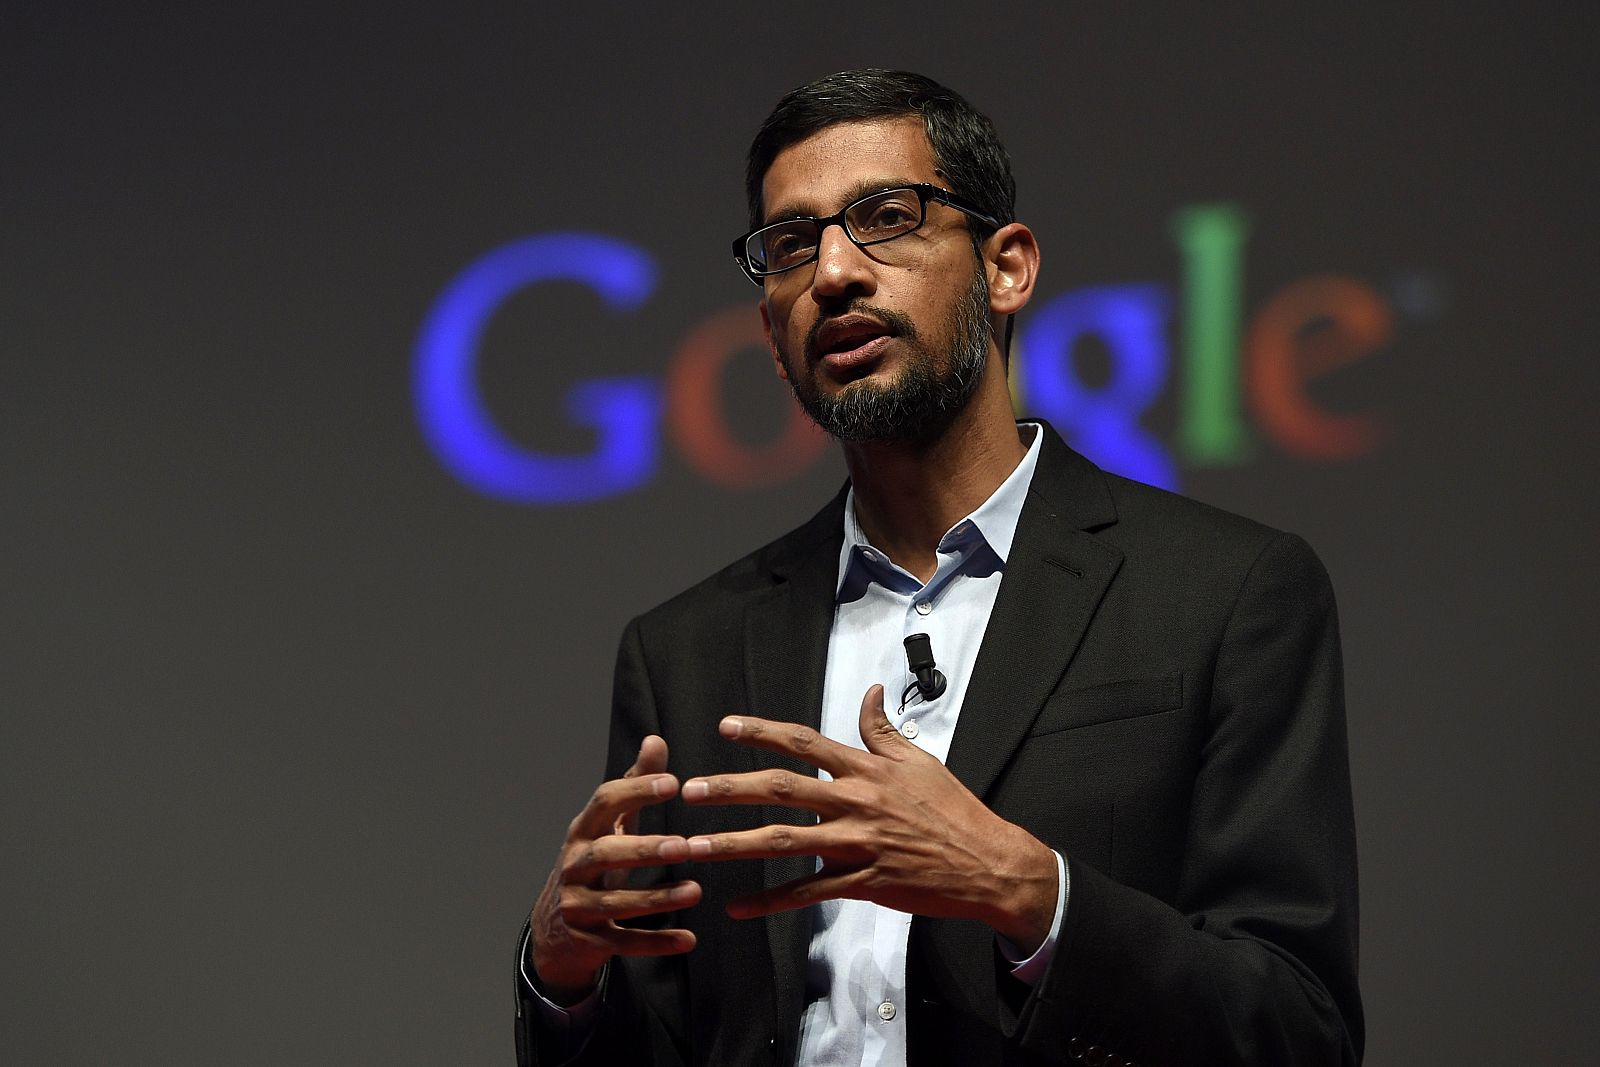 El vicepresidente de Google, Sundar Pichai, durante su intervención en el Mobile World Congress de Barcelona 2015.